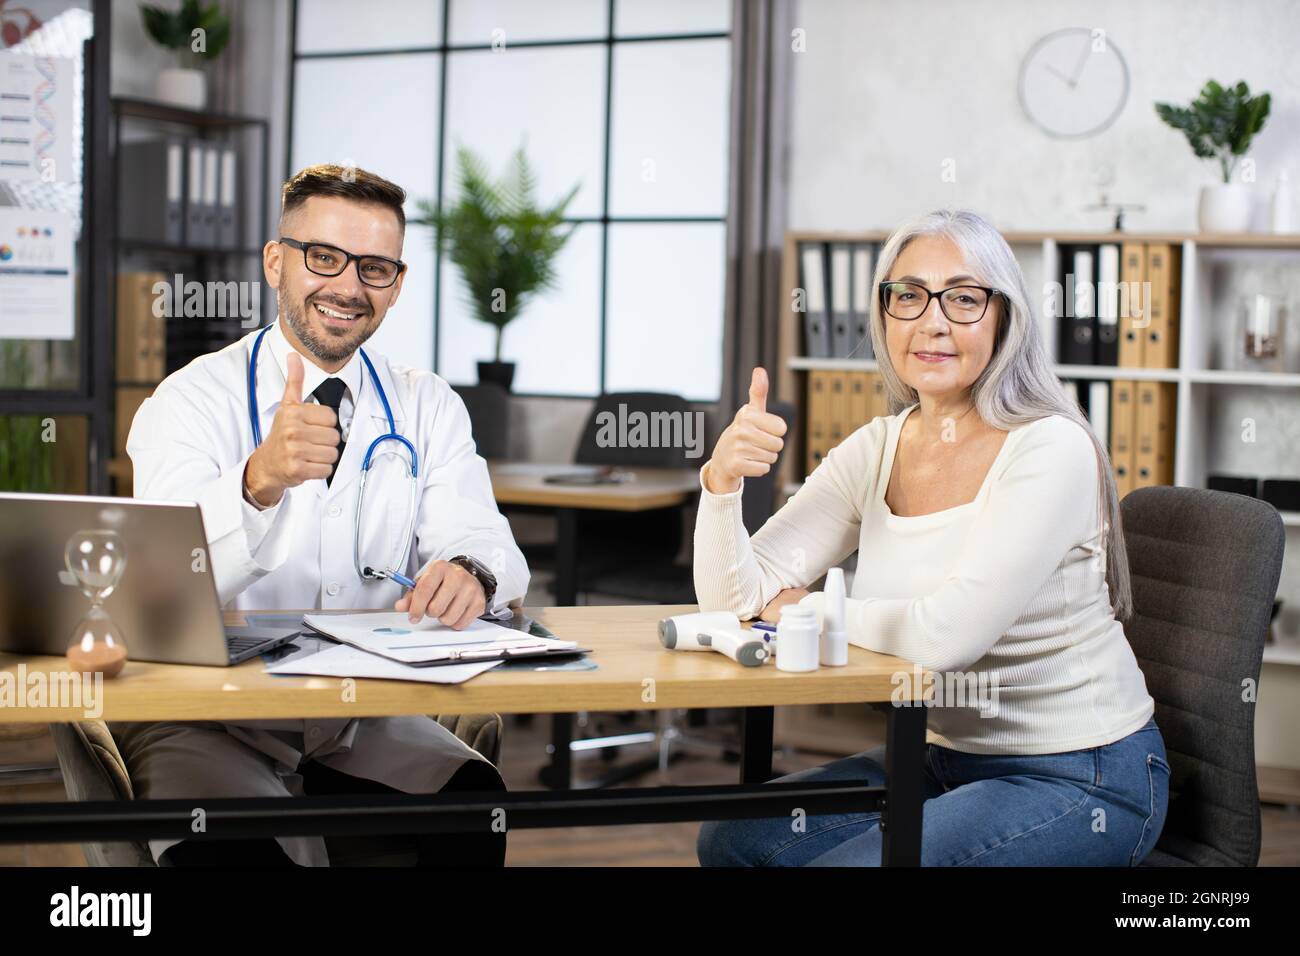 Kaukasischer bärtiger Arzt in weißem Laborkittel und Brille sitzt mit einer älteren Frau am Schreibtisch, lächelt vor der Kamera und zeigt den Daumen hoch. Konzept von Menschen, Behandlung und Gesundheitsfürsorge. Stockfoto